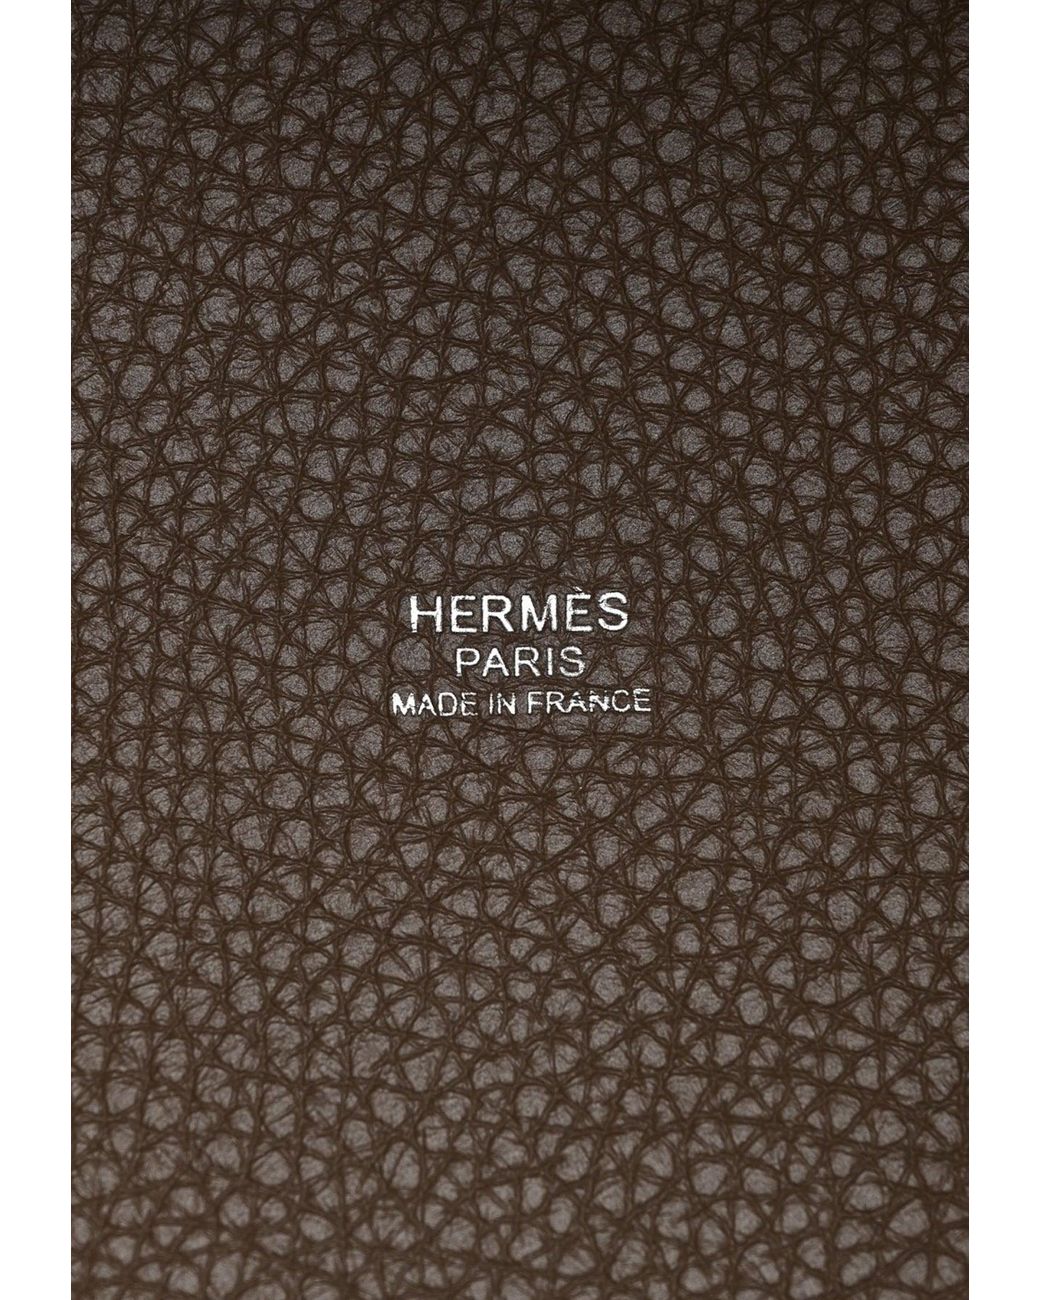 Hermès Black Clemence Picotin Lock 18 Palladium Hardware, 2021